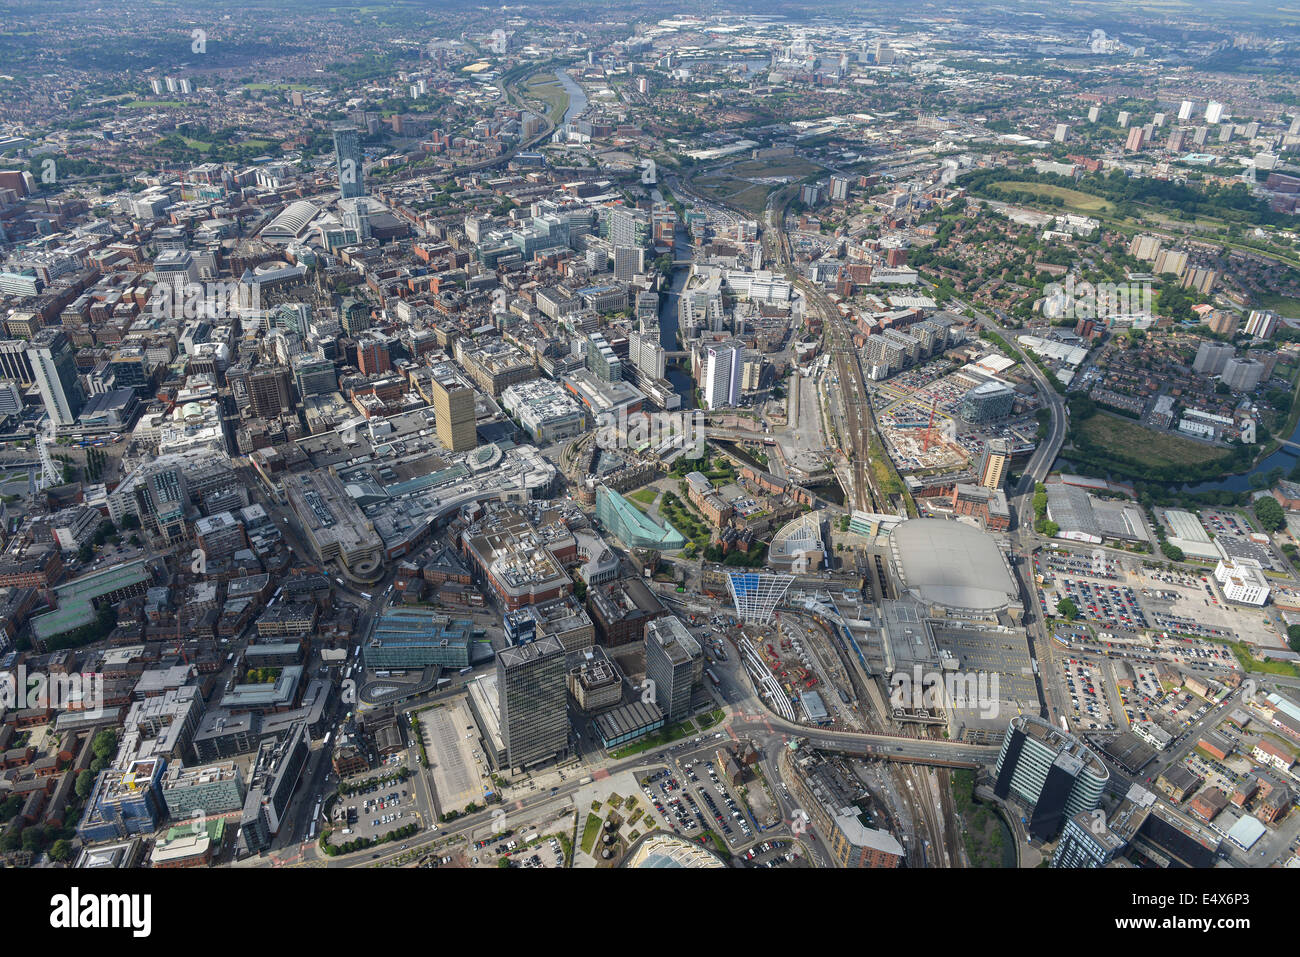 Una vista aérea mirando al sur oeste de la estación de Victoria hacia el centro de la ciudad de Manchester. Foto de stock